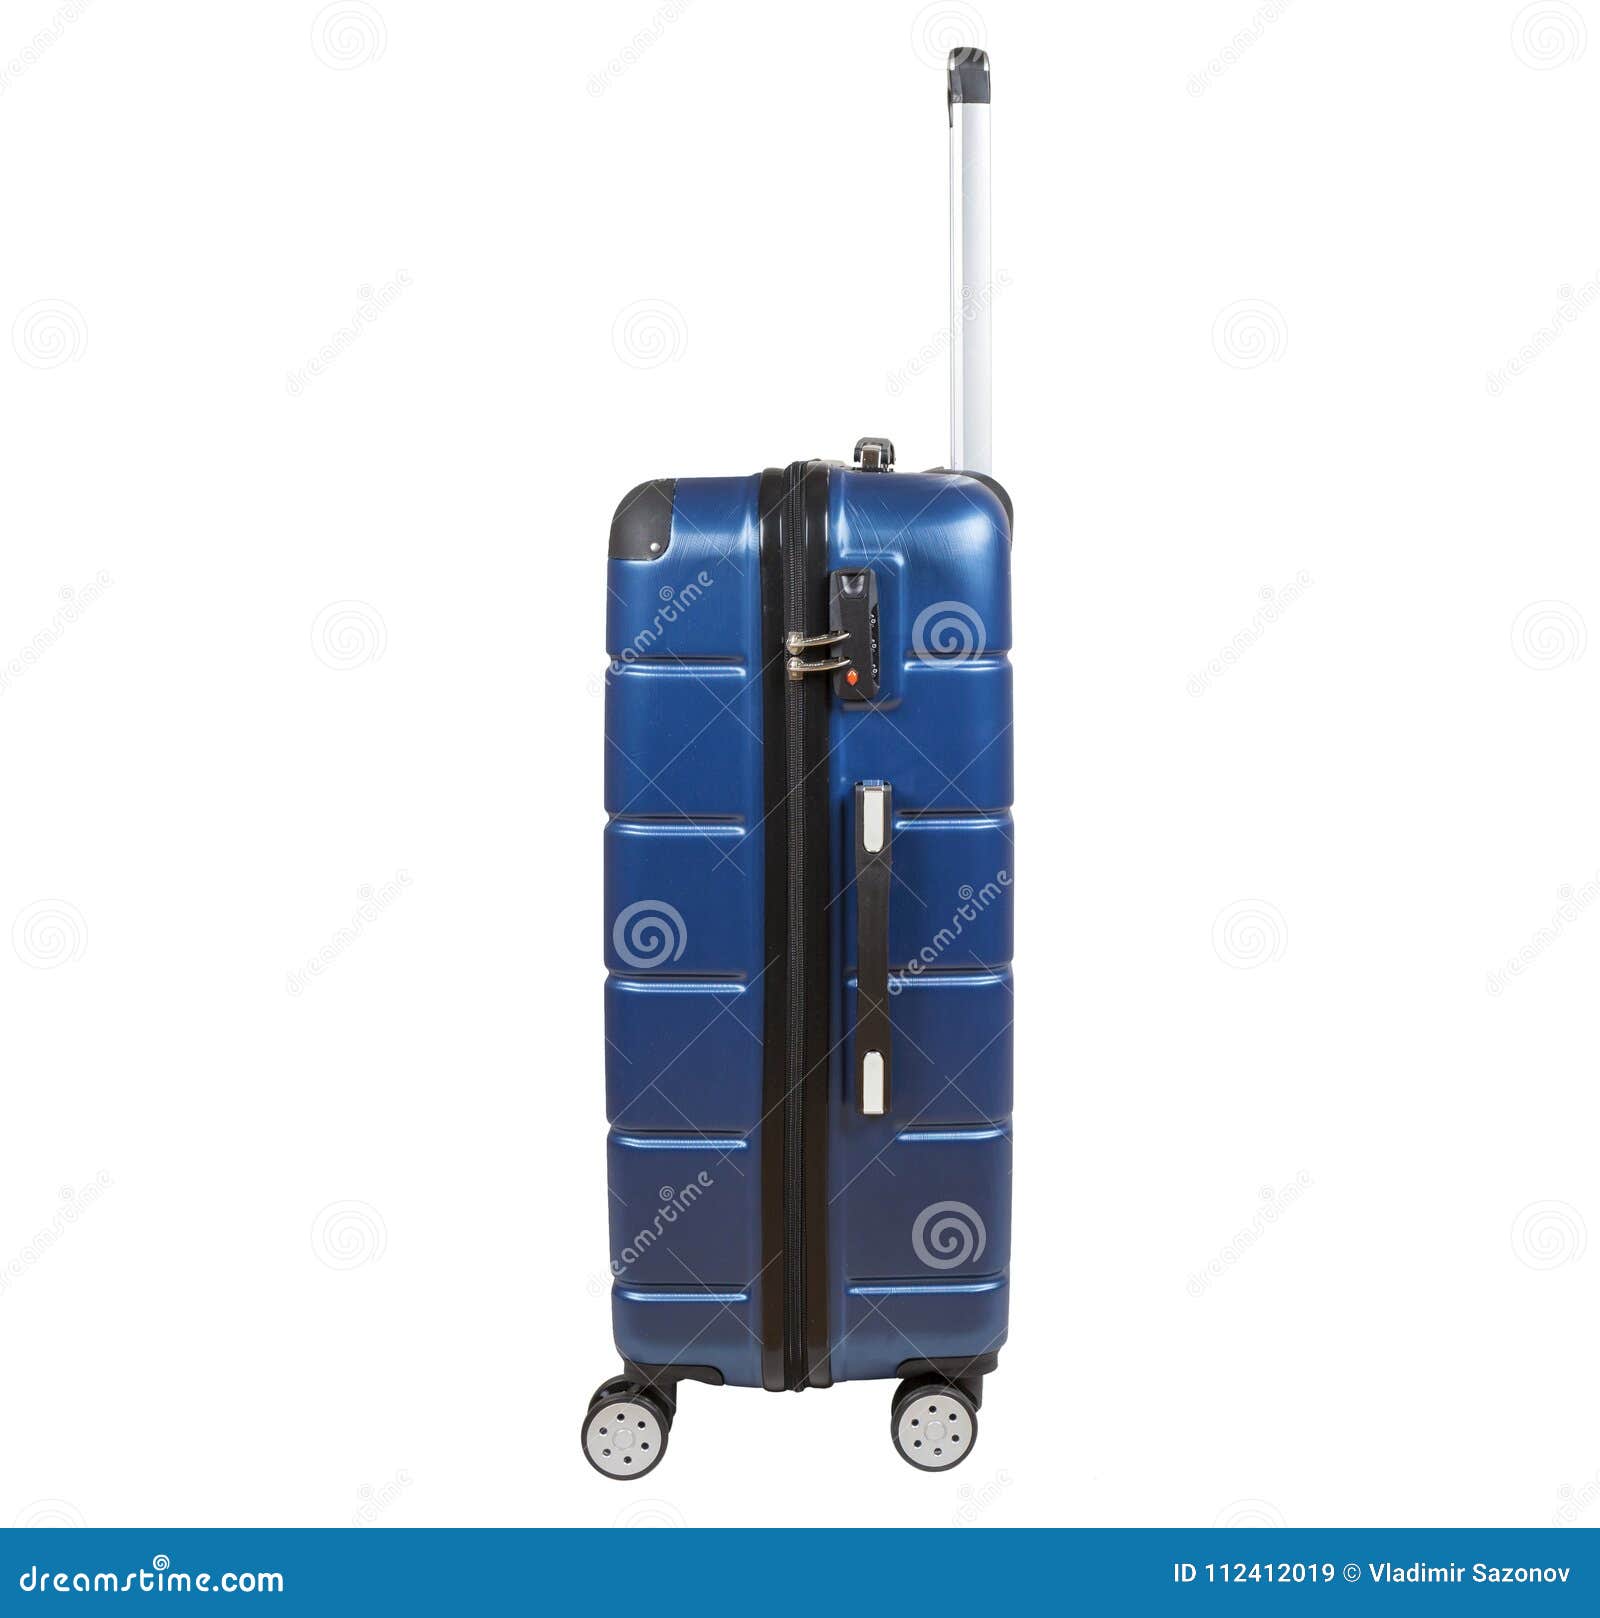 Blue Suitcase Isolated on White Background. Stock Image - Image of ...